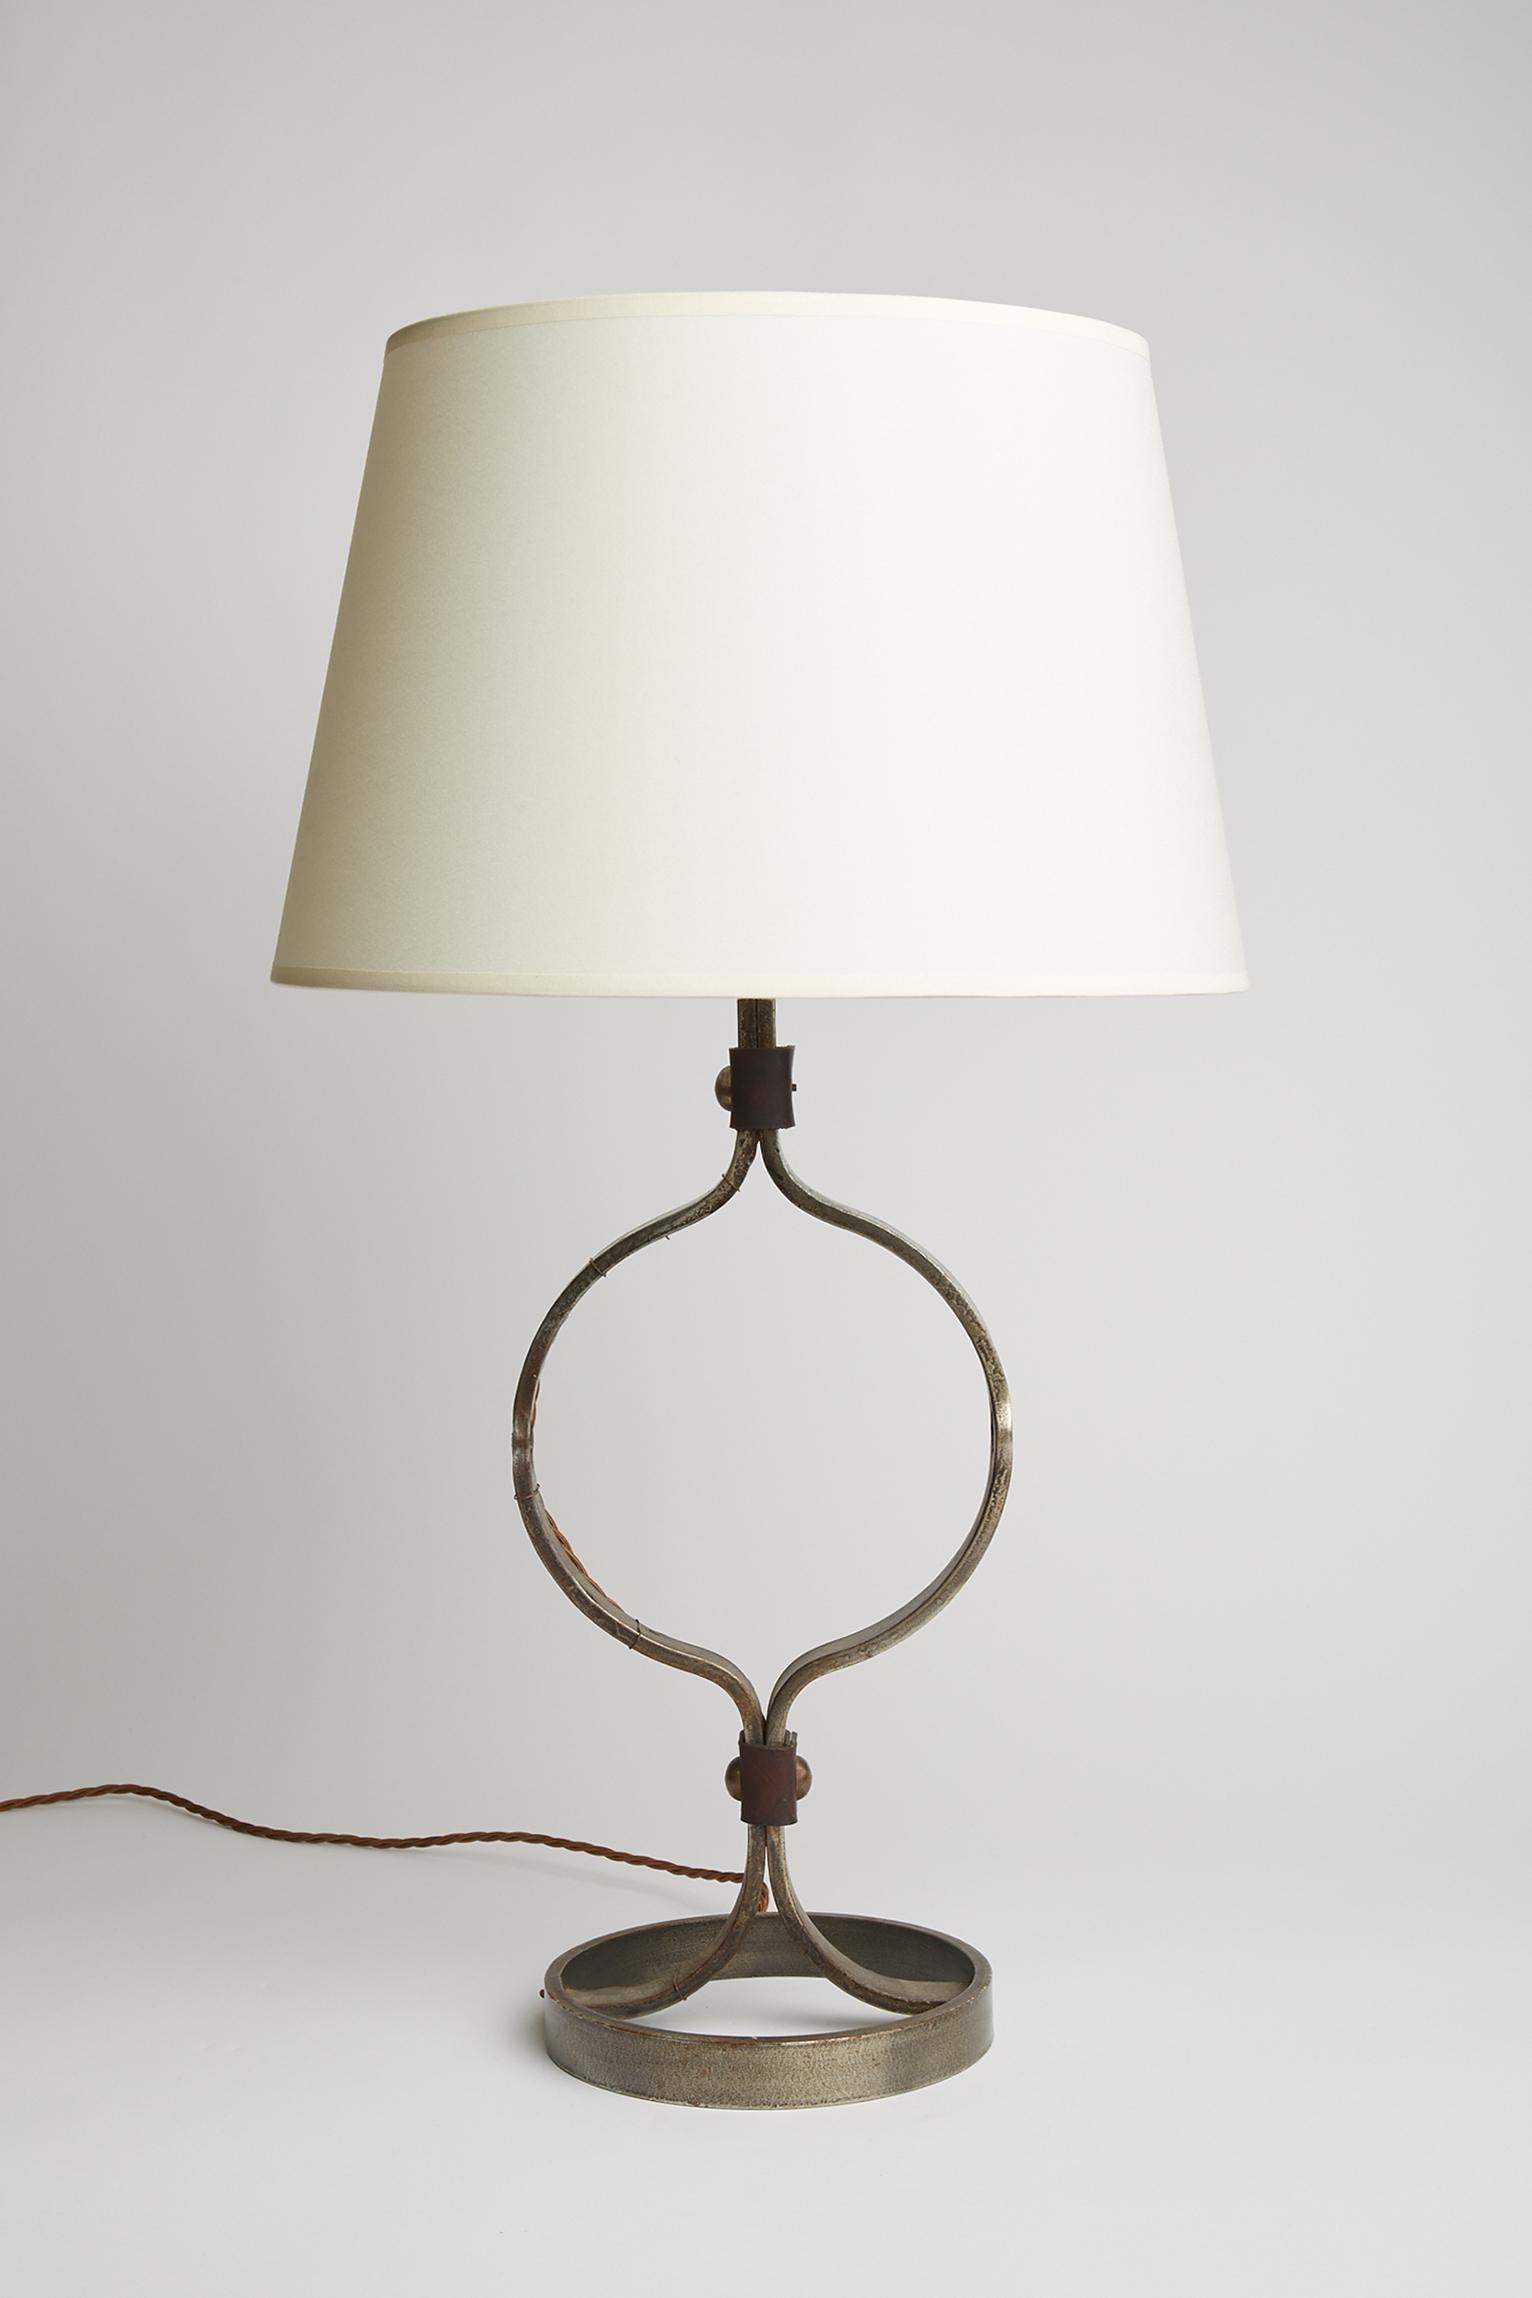 Une lampe de table en fer forgé et cuir brun clouté de Jean-Pierre Ryckaert. 
France, vers 1950
L'abat-jour : 74 cm de haut par 40 cm de diamètre 
Base de la lampe seulement : 53 cm de haut par 19,5 cm de diamètre.